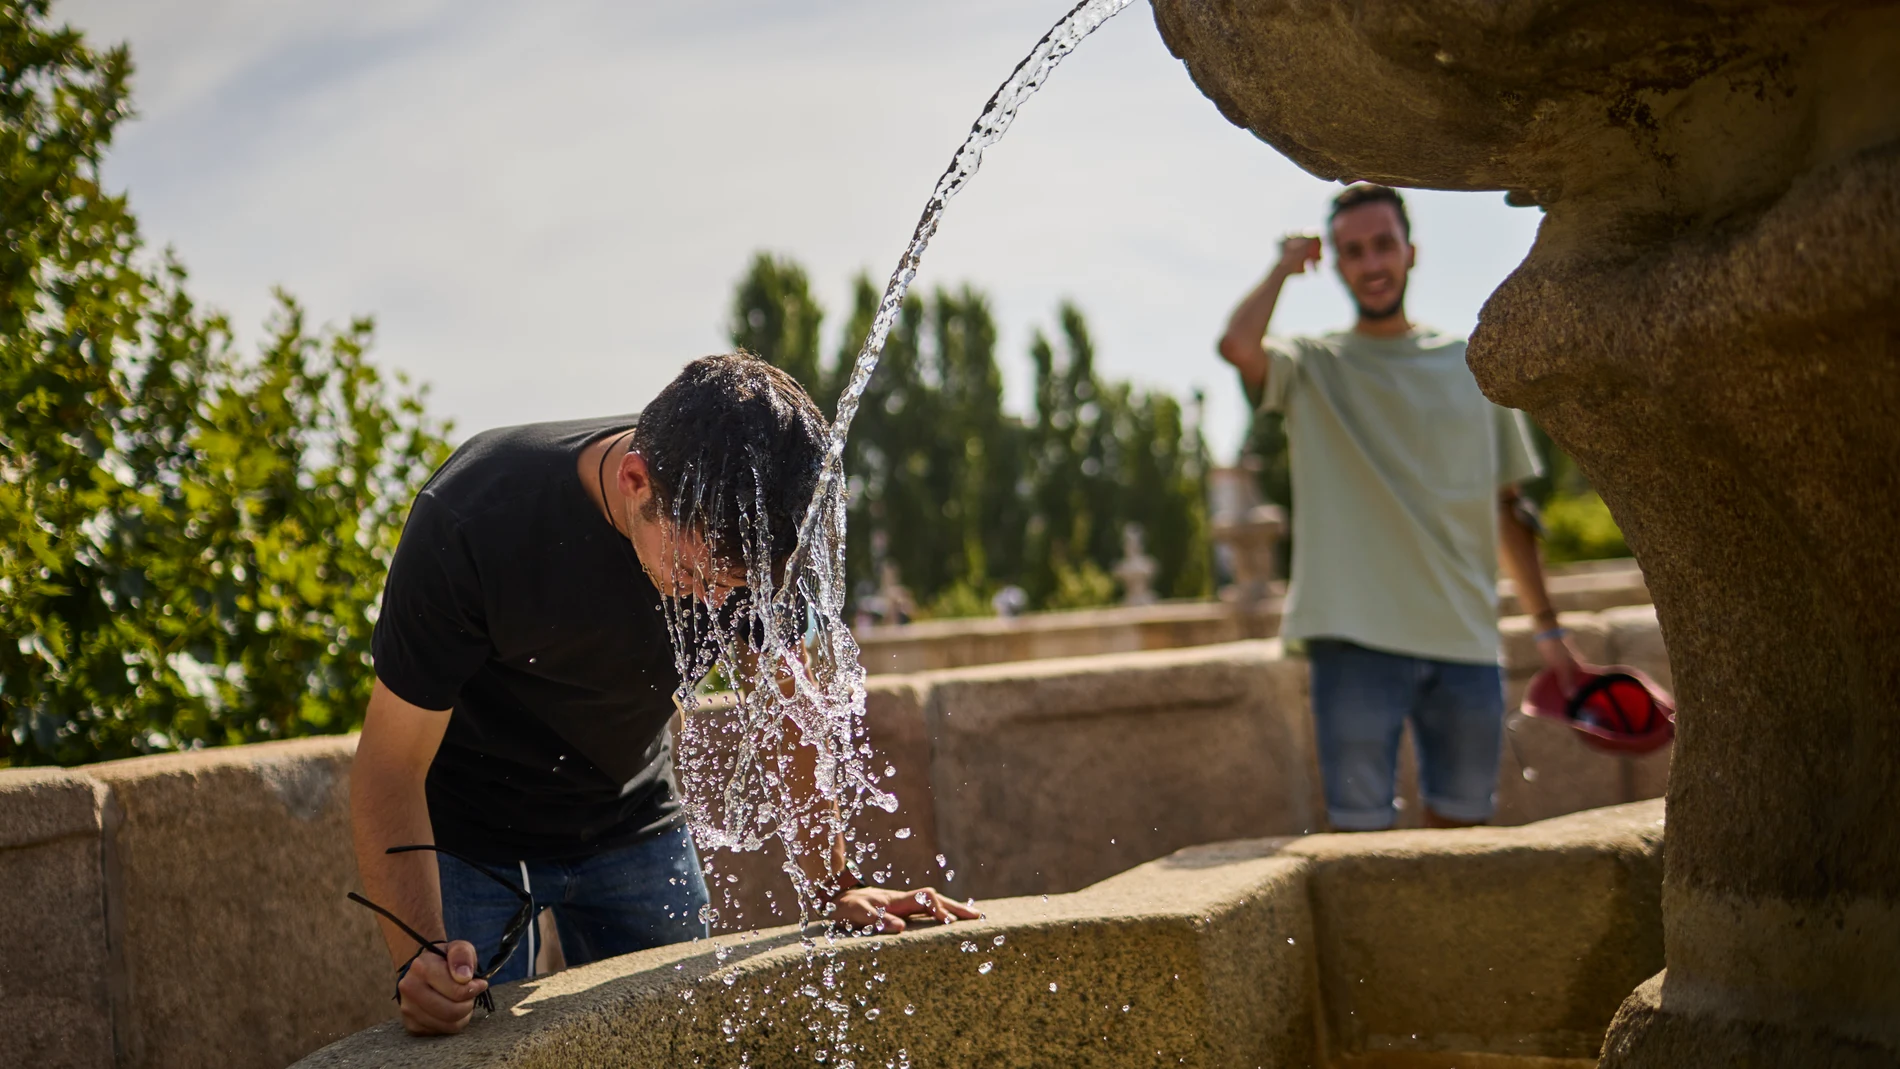 Personas intentan refrescarse en una fuente para combatir el calor en Madrid